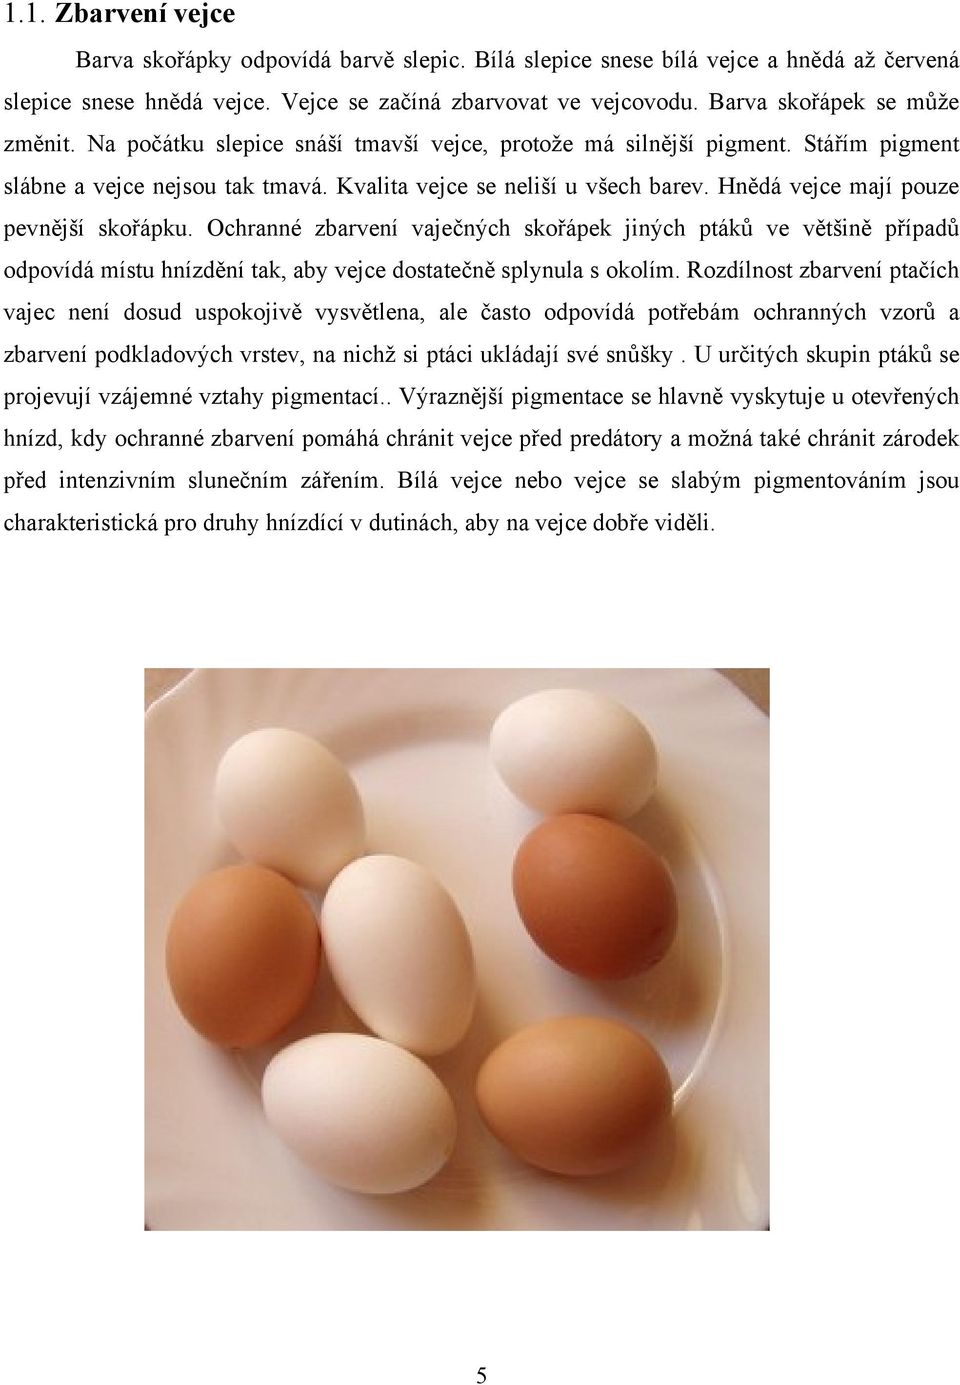 Hnědá vejce mají pouze pevnější skořápku. Ochranné zbarvení vaječných skořápek jiných ptáků ve většině případů odpovídá místu hnízdění tak, aby vejce dostatečně splynula s okolím.